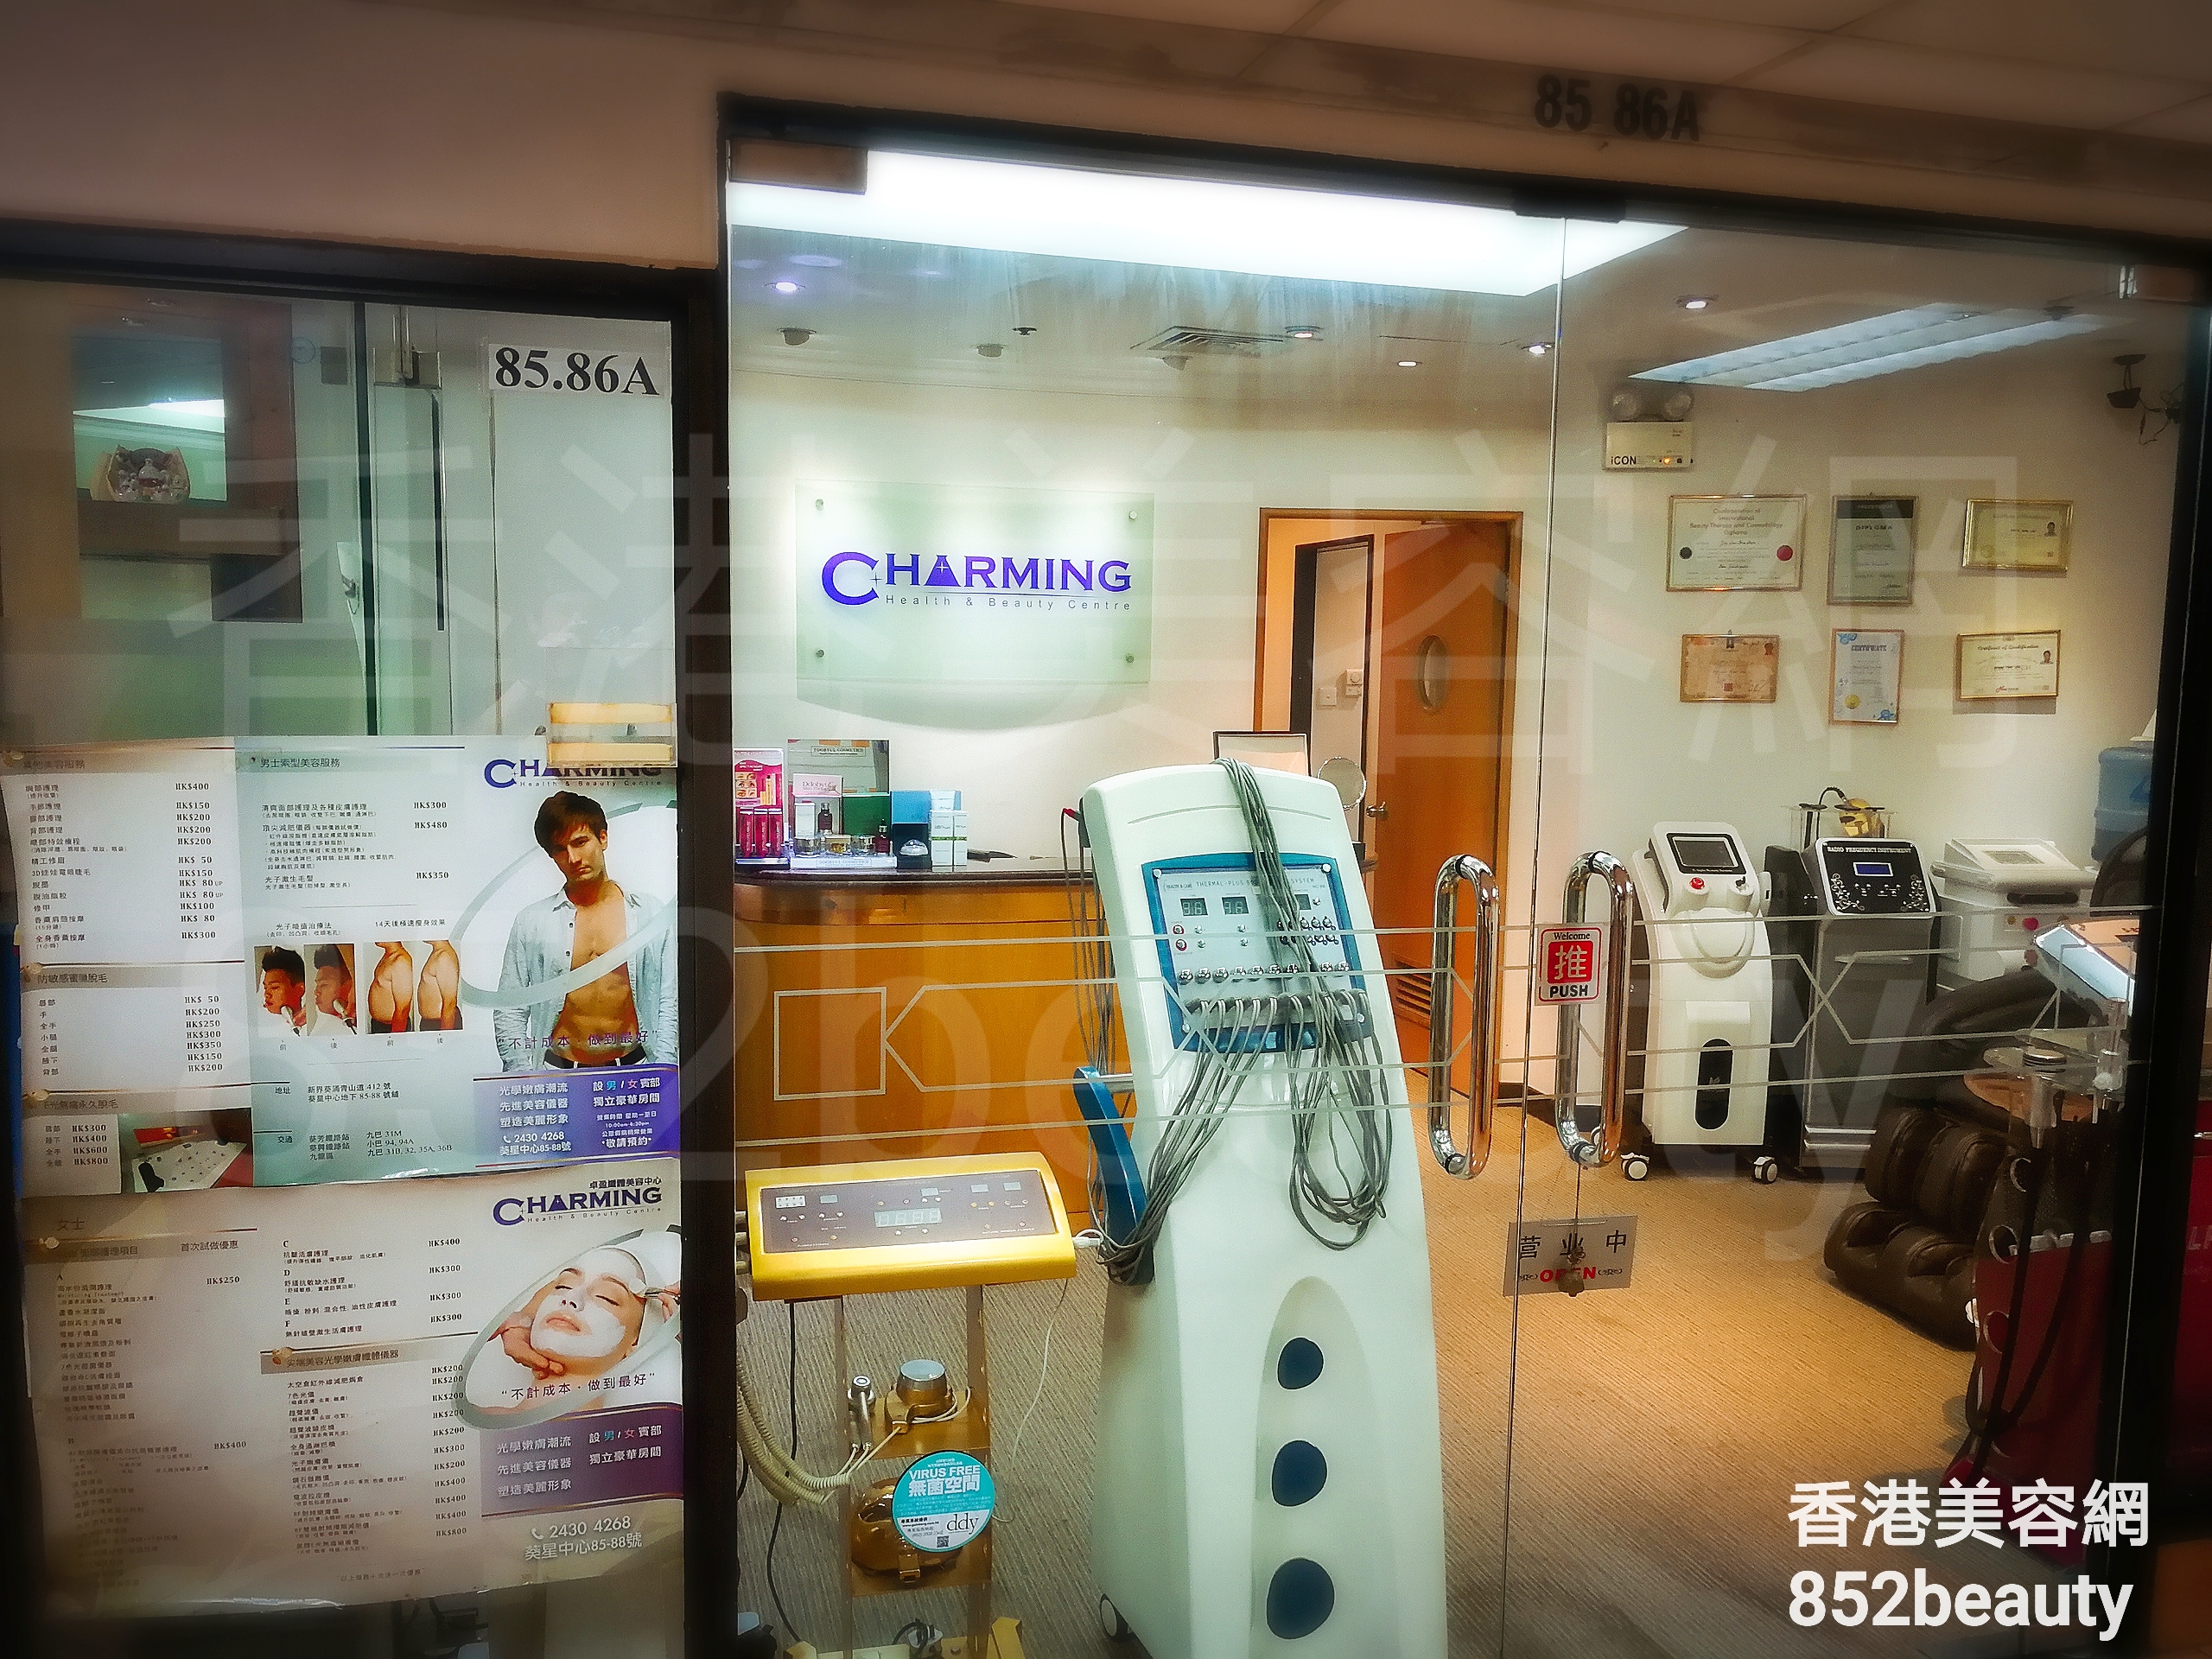 脱毛: Charming Health & Beauty Centre